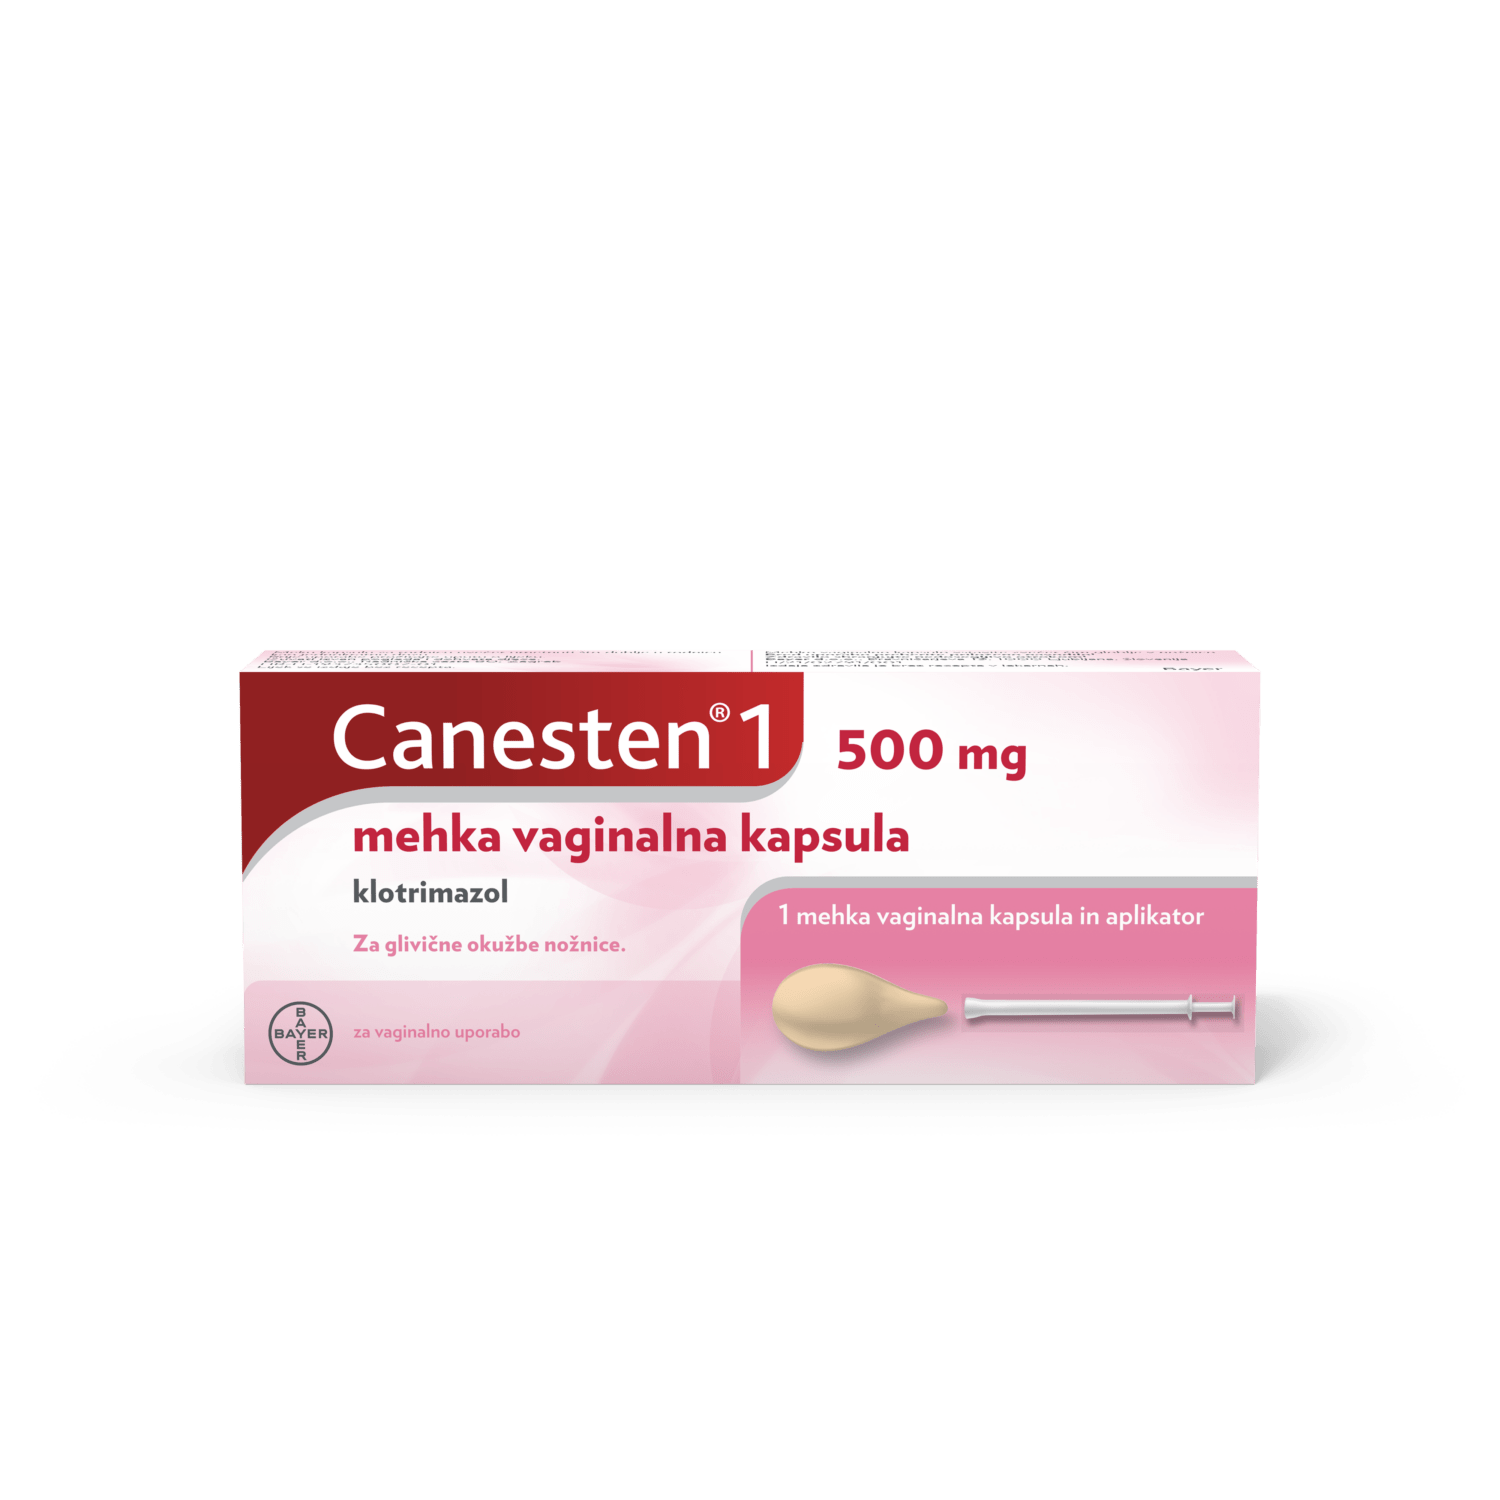 Canesten1 500 mg mehka vaginalna kapsula, 1 vaginalna kapsula